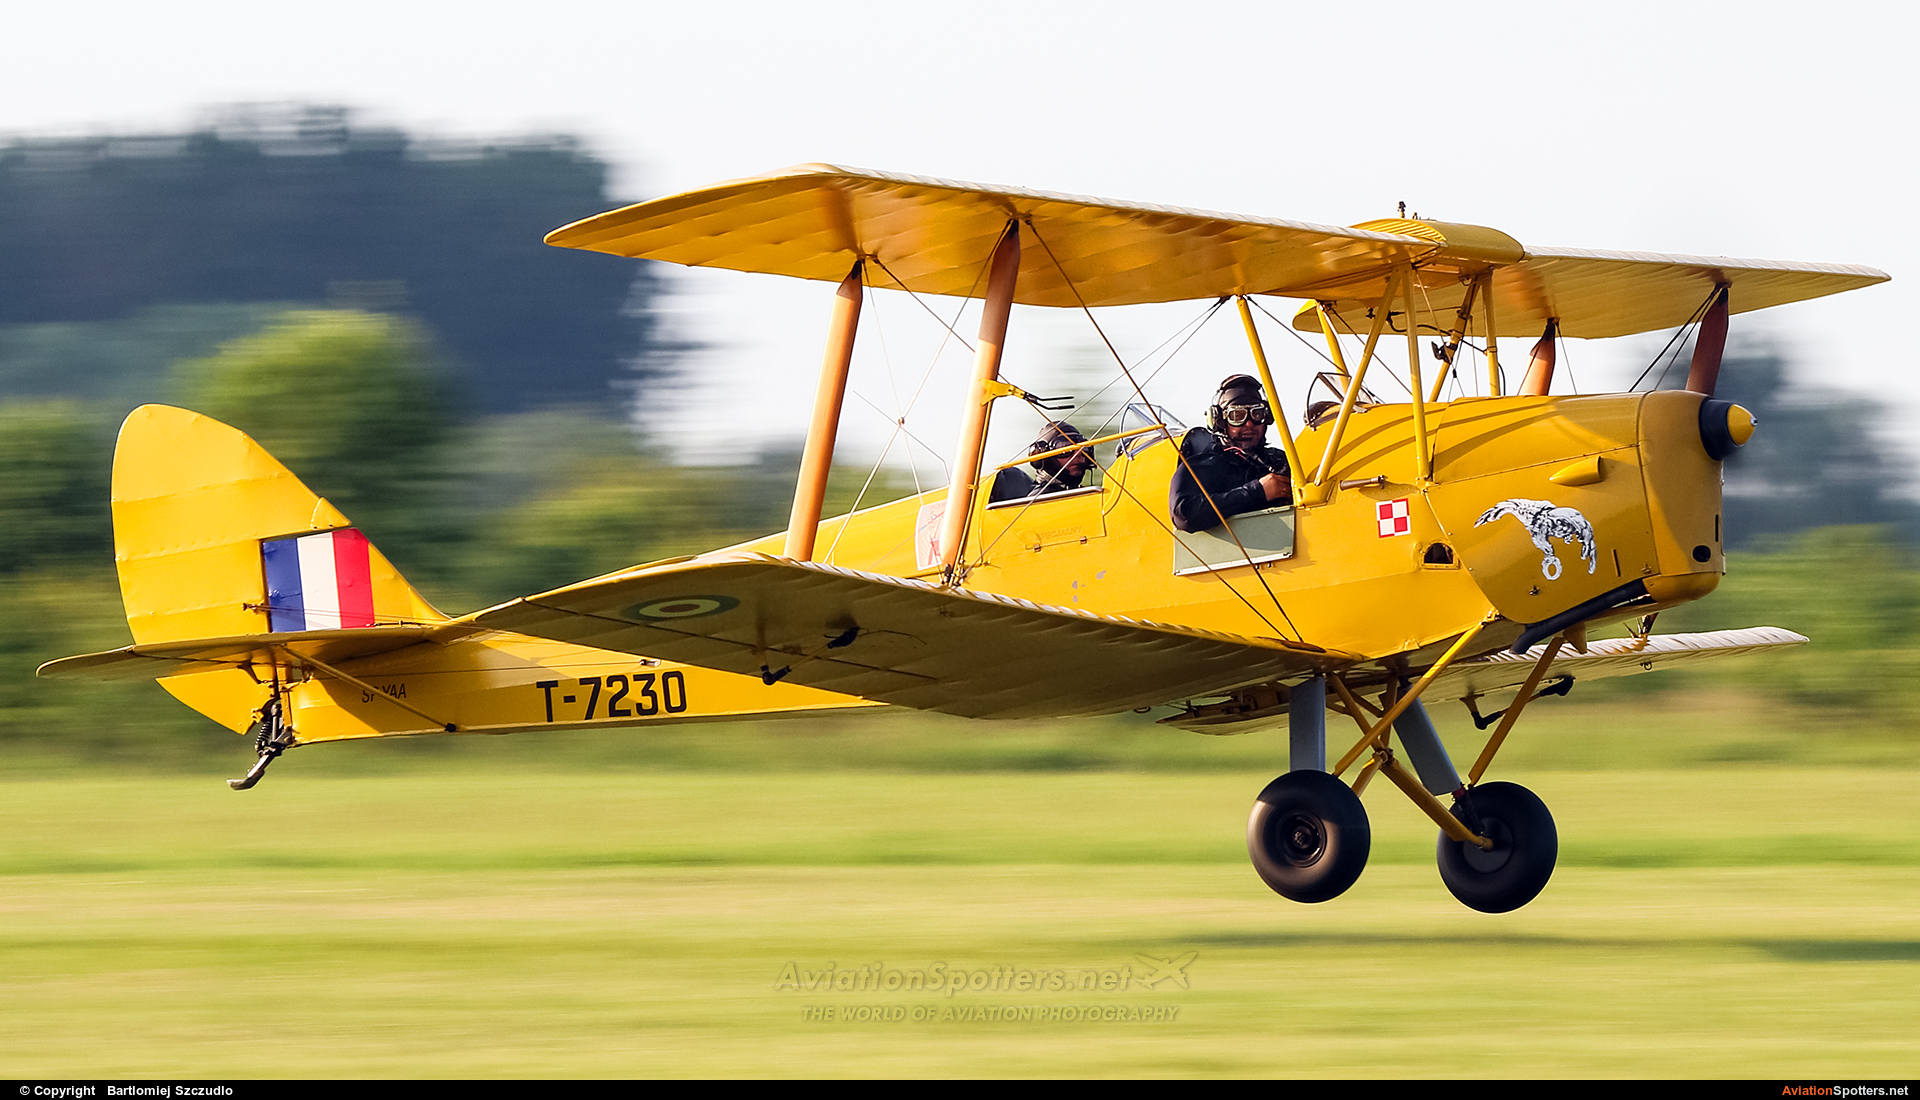   DH. 82 Tiger Moth  (T-7230) By Bartlomiej Szczudlo  (BartekSzczudlo)